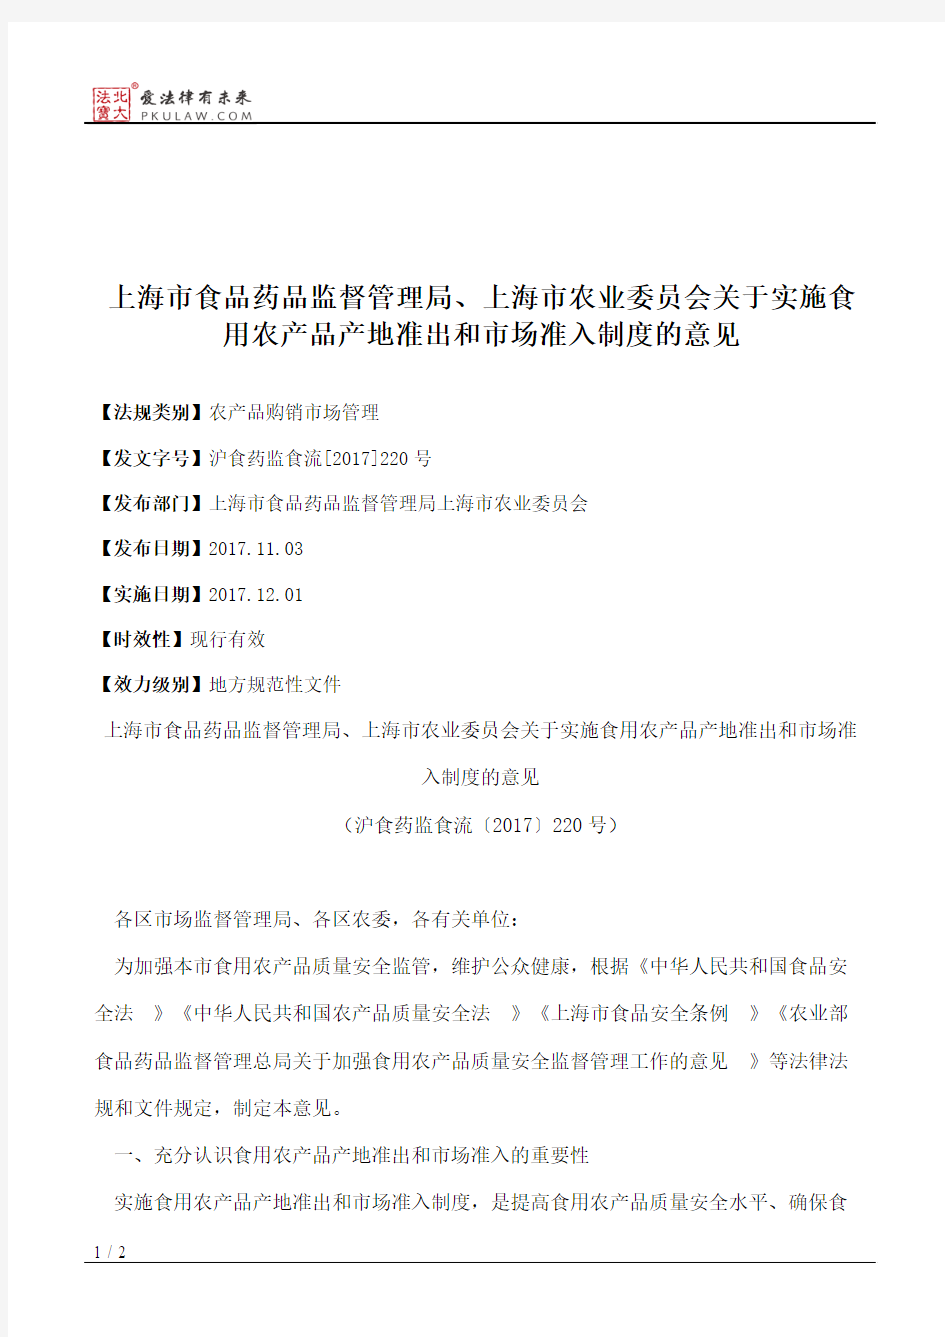 上海市食品药品监督管理局、上海市农业委员会关于实施食用农产品